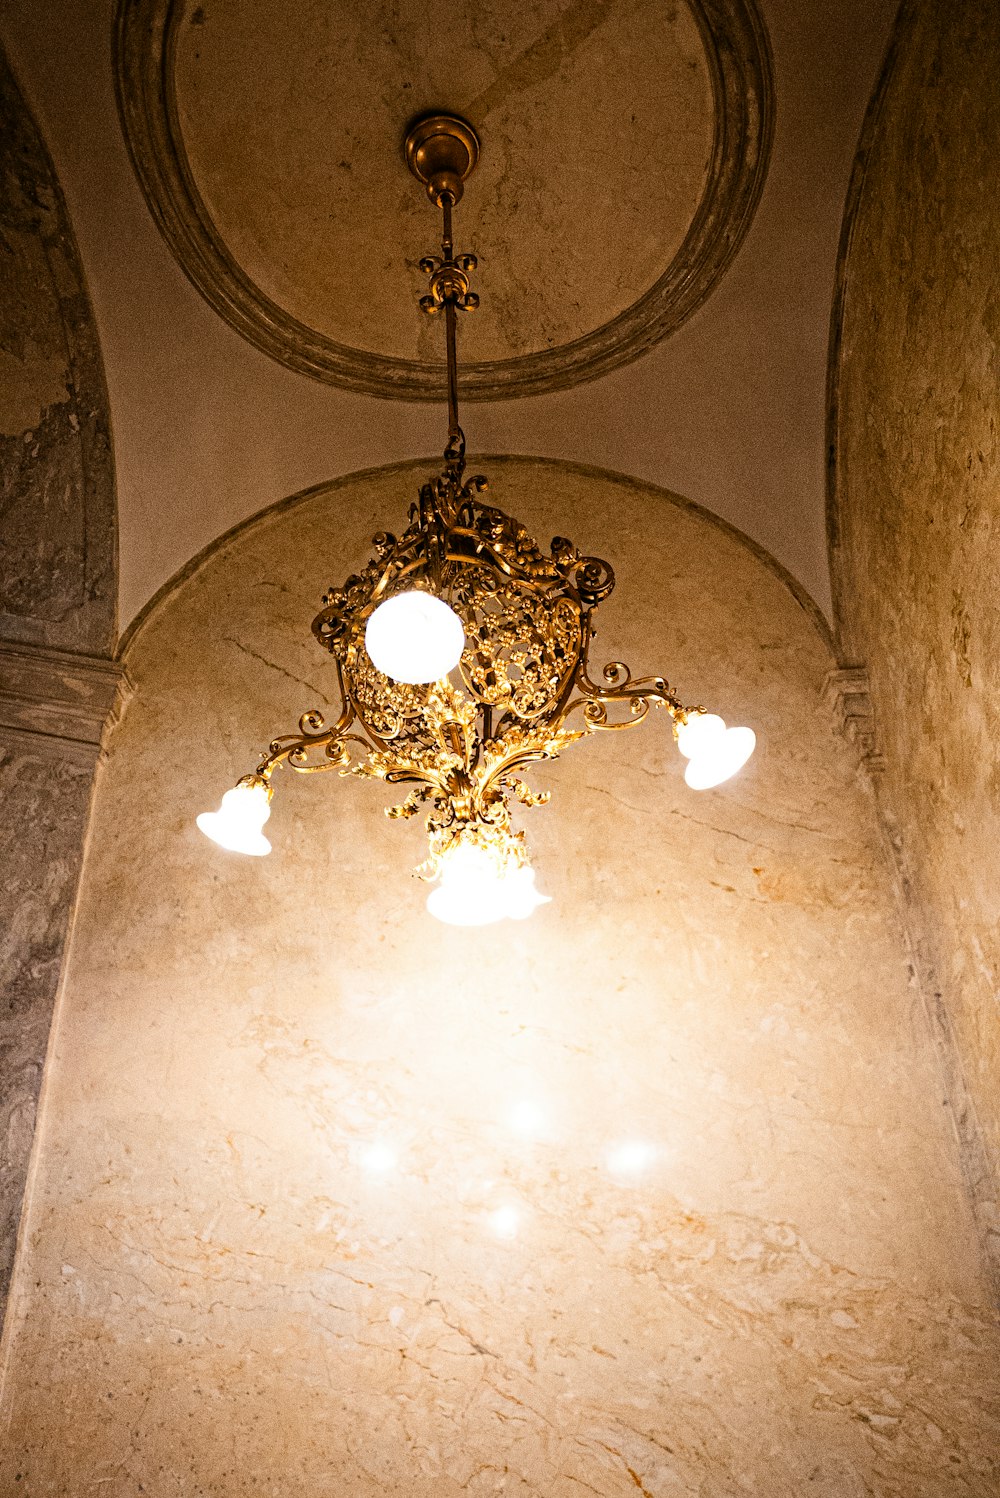 Un candelabro que cuelga del techo de un edificio